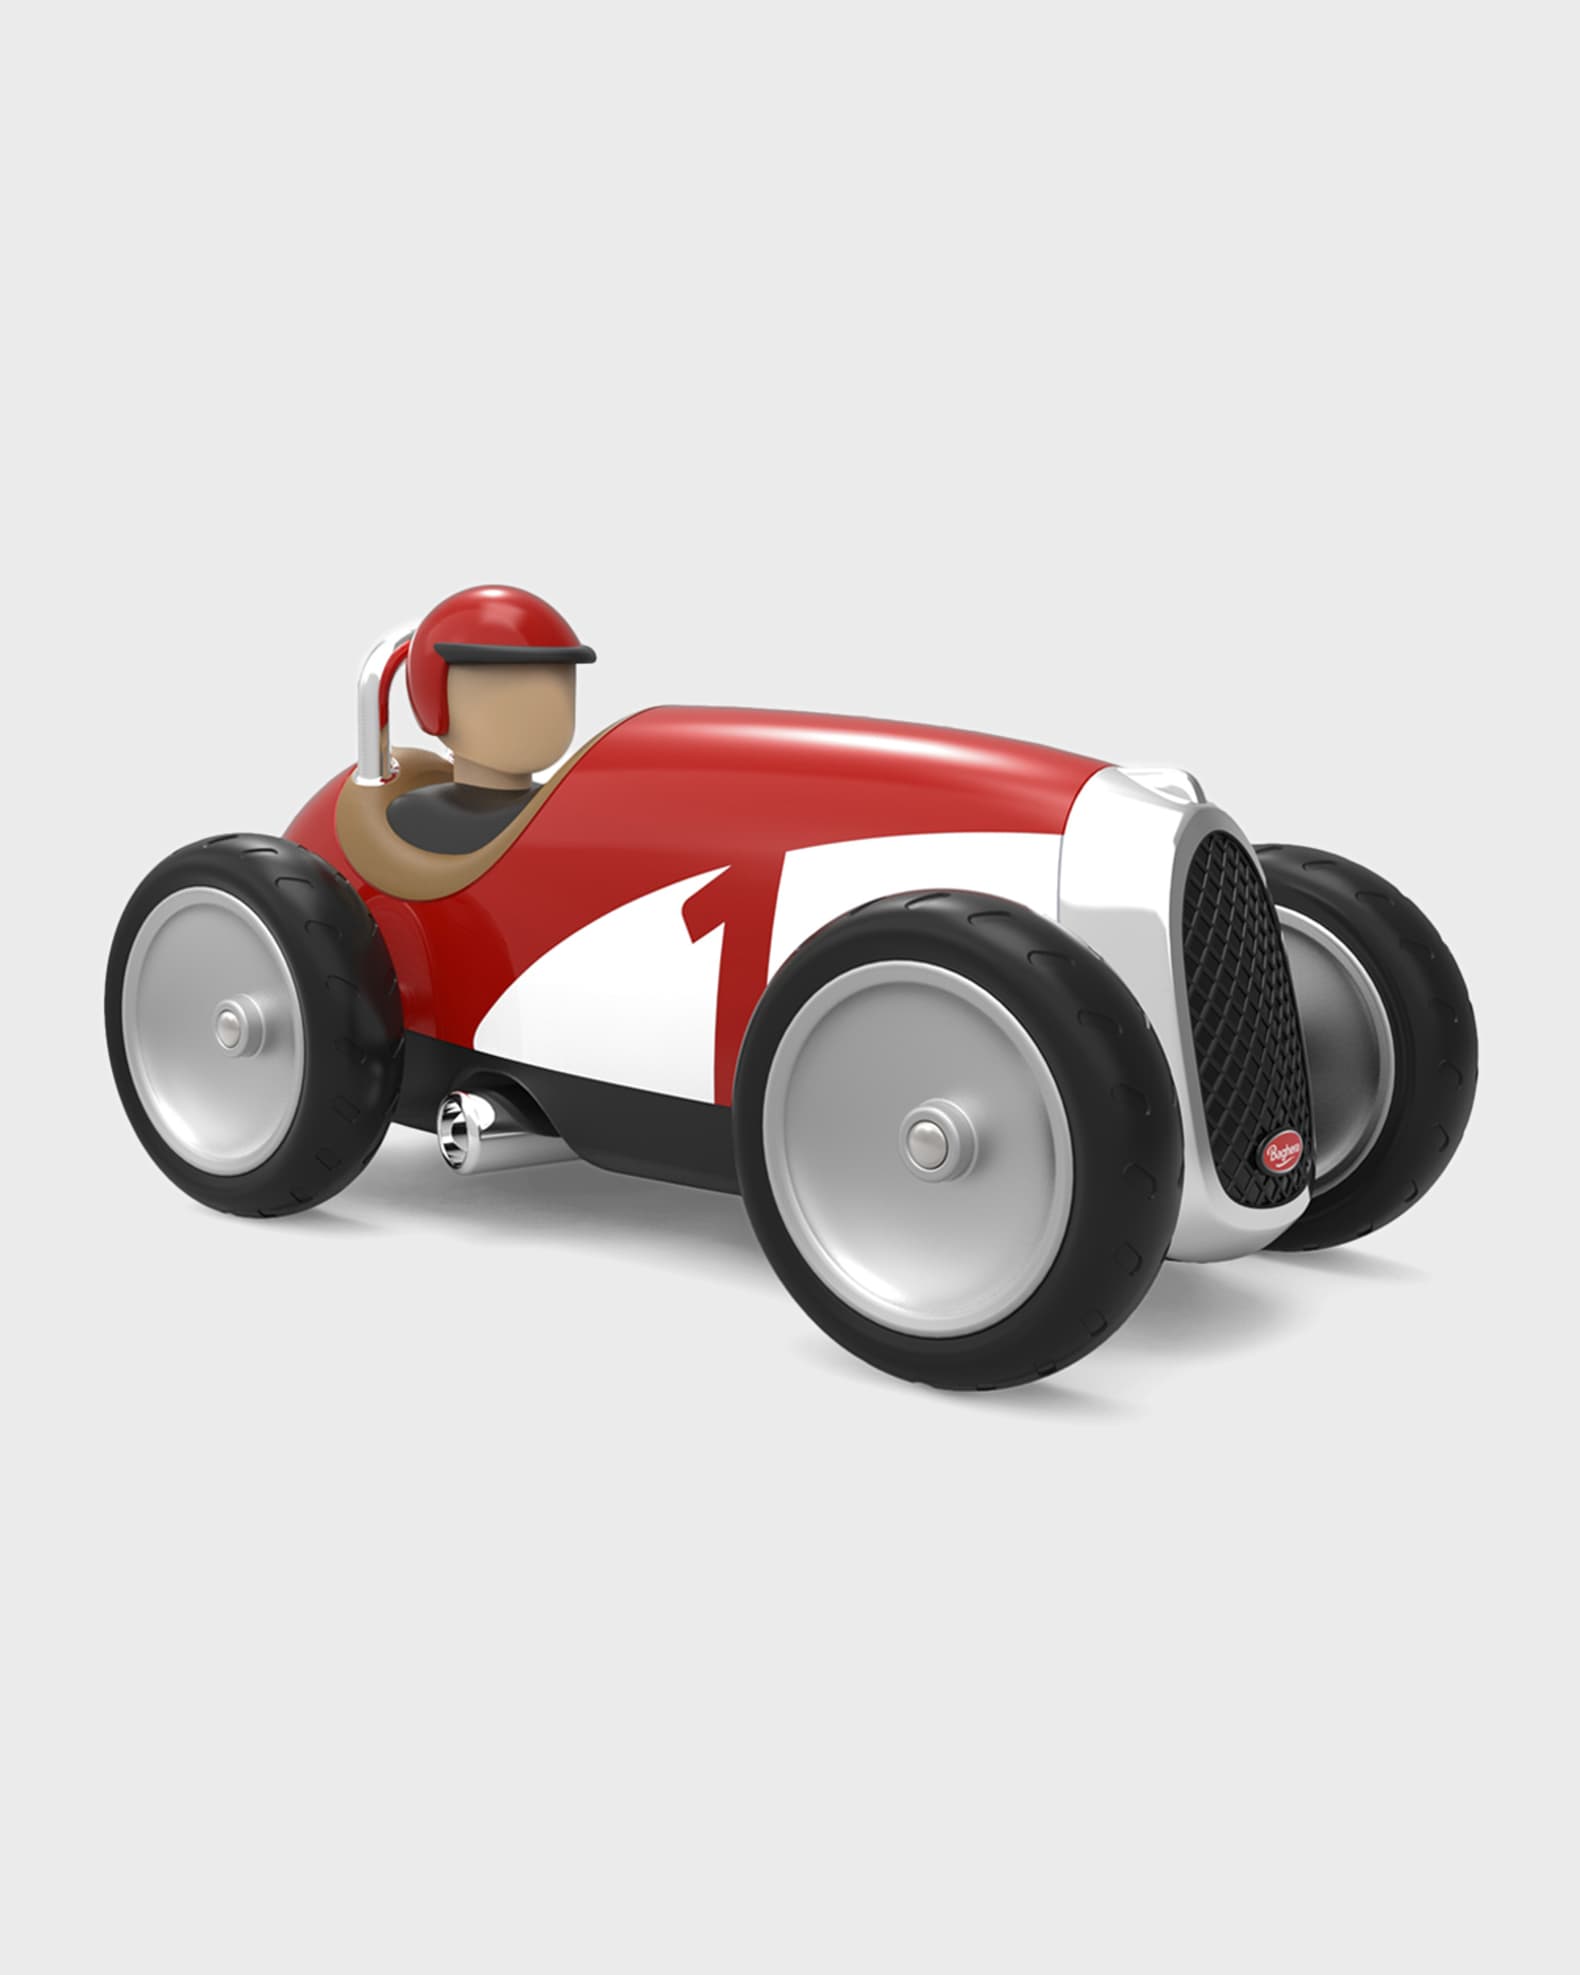 Playforever Mini Speedy Car - Silver - Tom's Toys